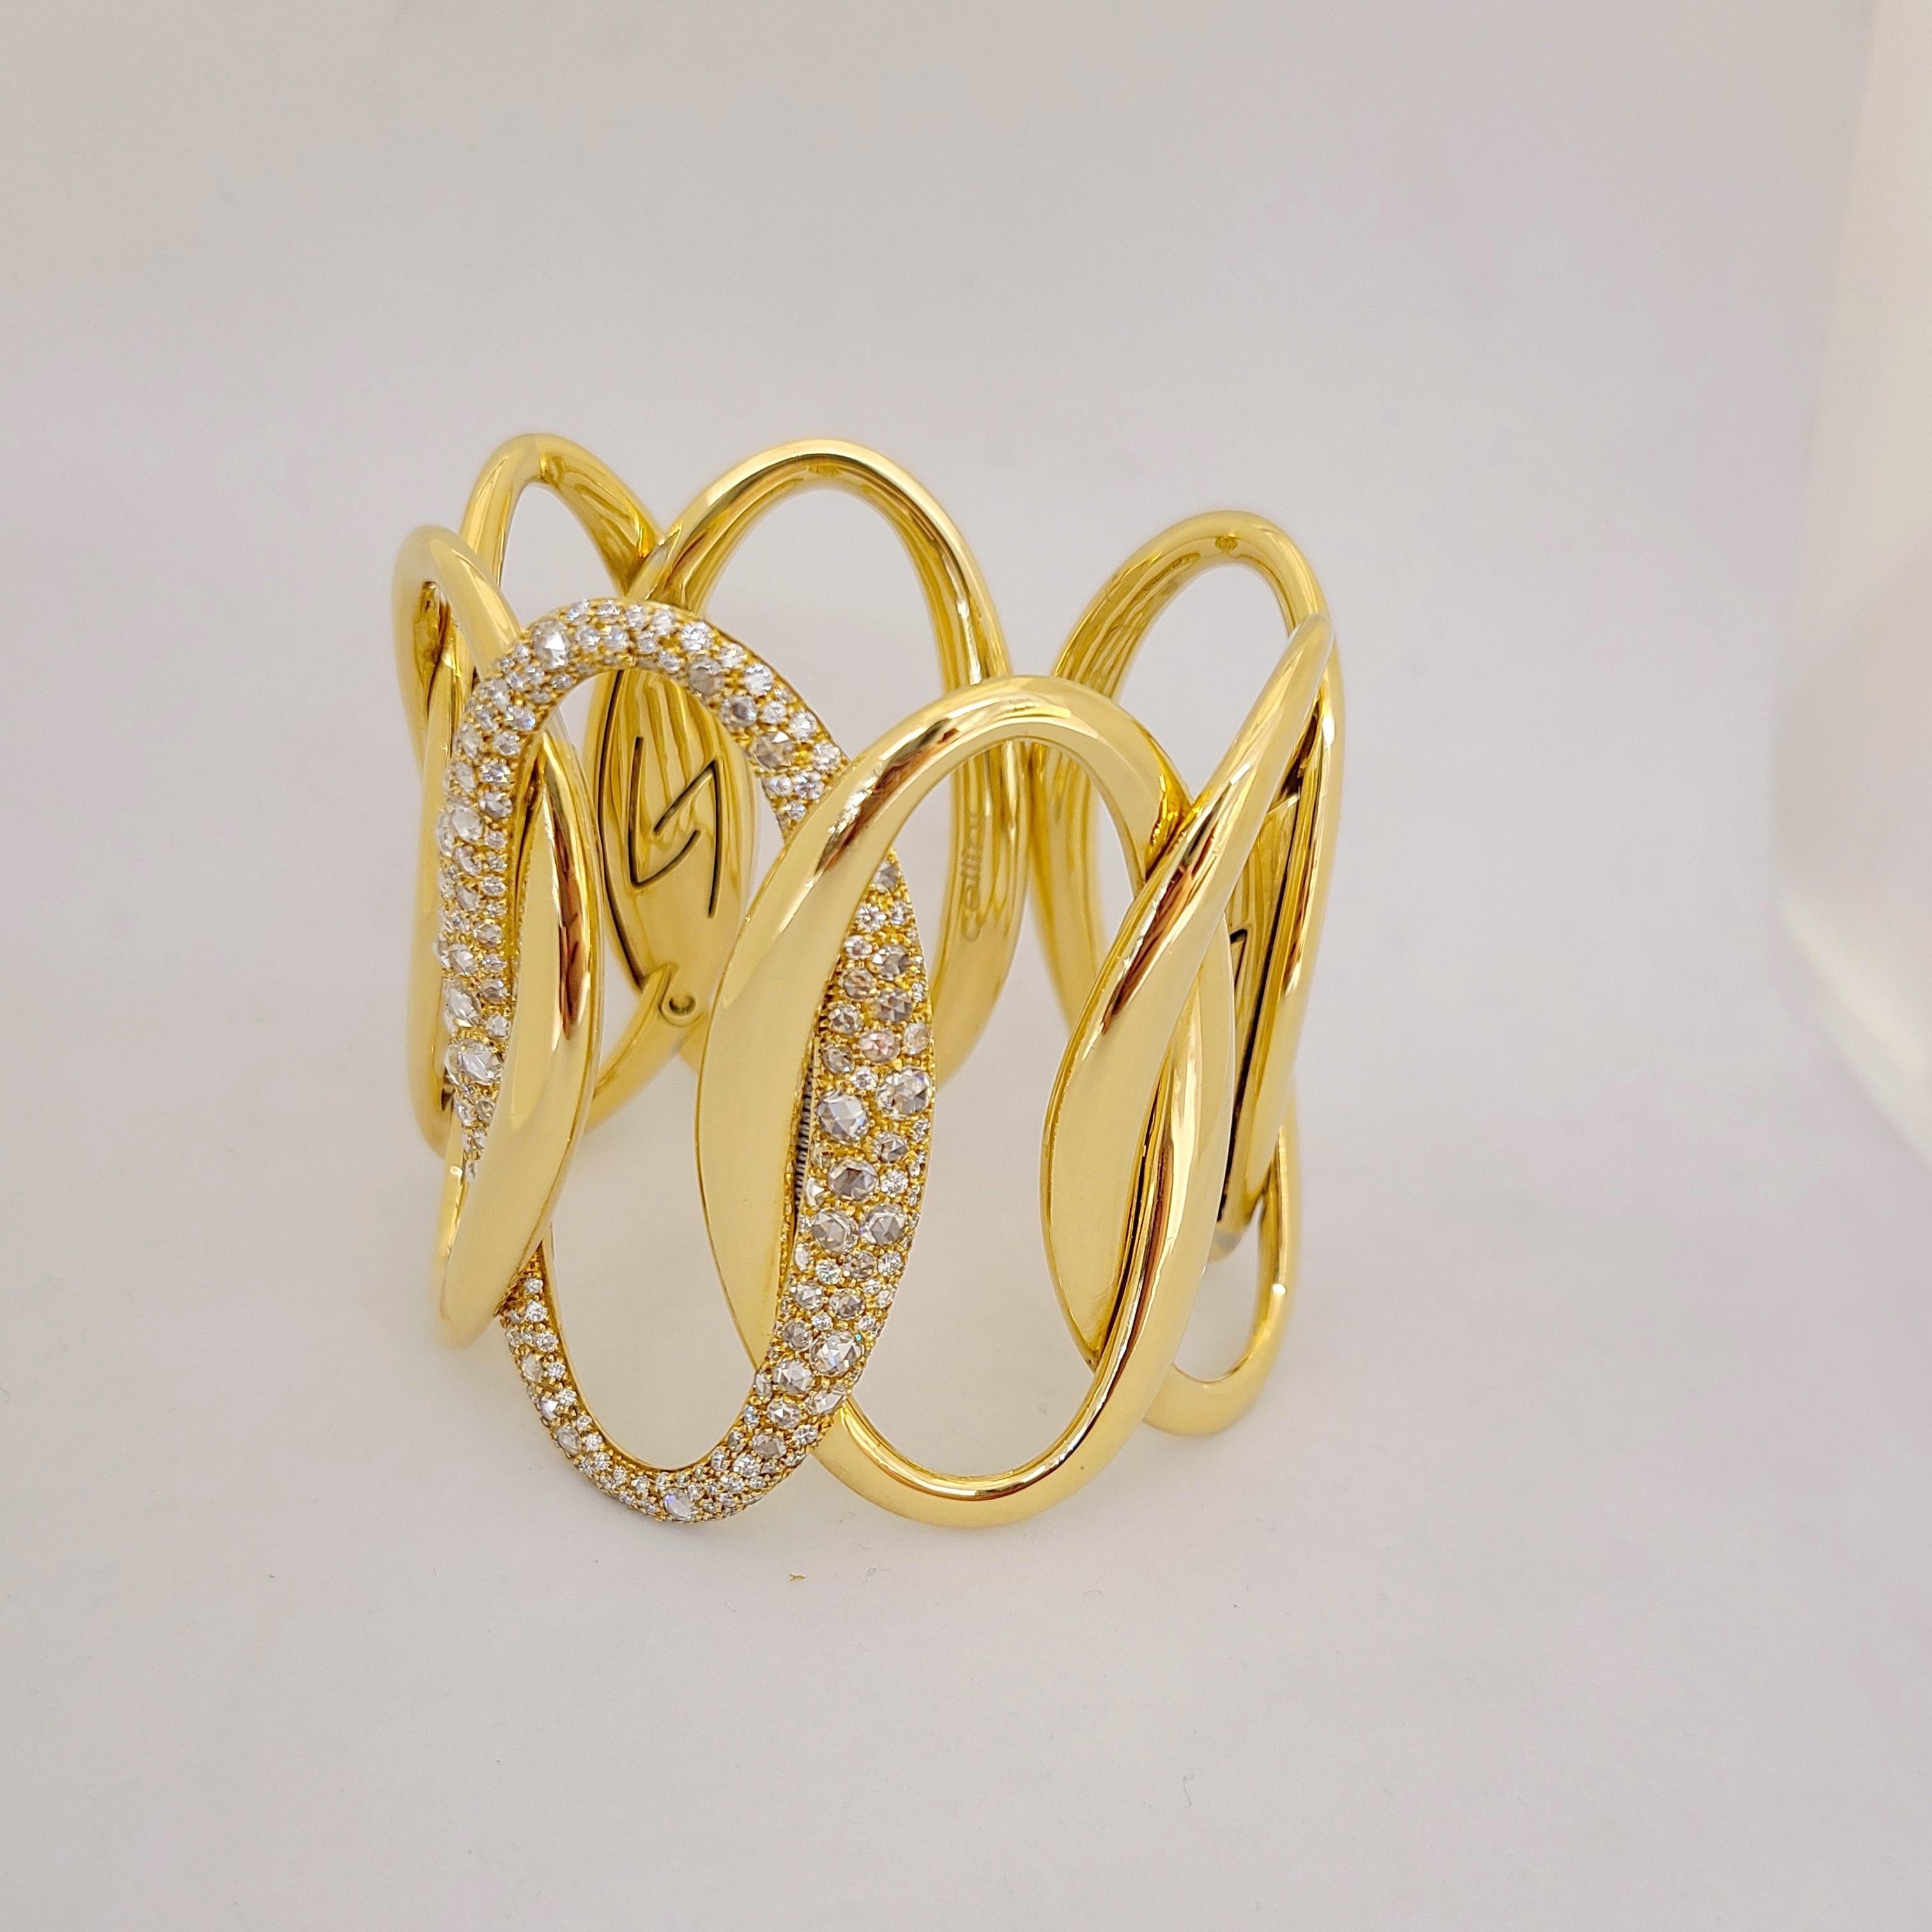 Fabriqué exclusivement pour Cellini NYC par g. Verdi d'Italie, ce bracelet manchette en or jaune 18 carats et diamants est un véritable coup de cœur. Maillons imbriqués en or jaune poli avec le maillon central entièrement serti de diamants ronds